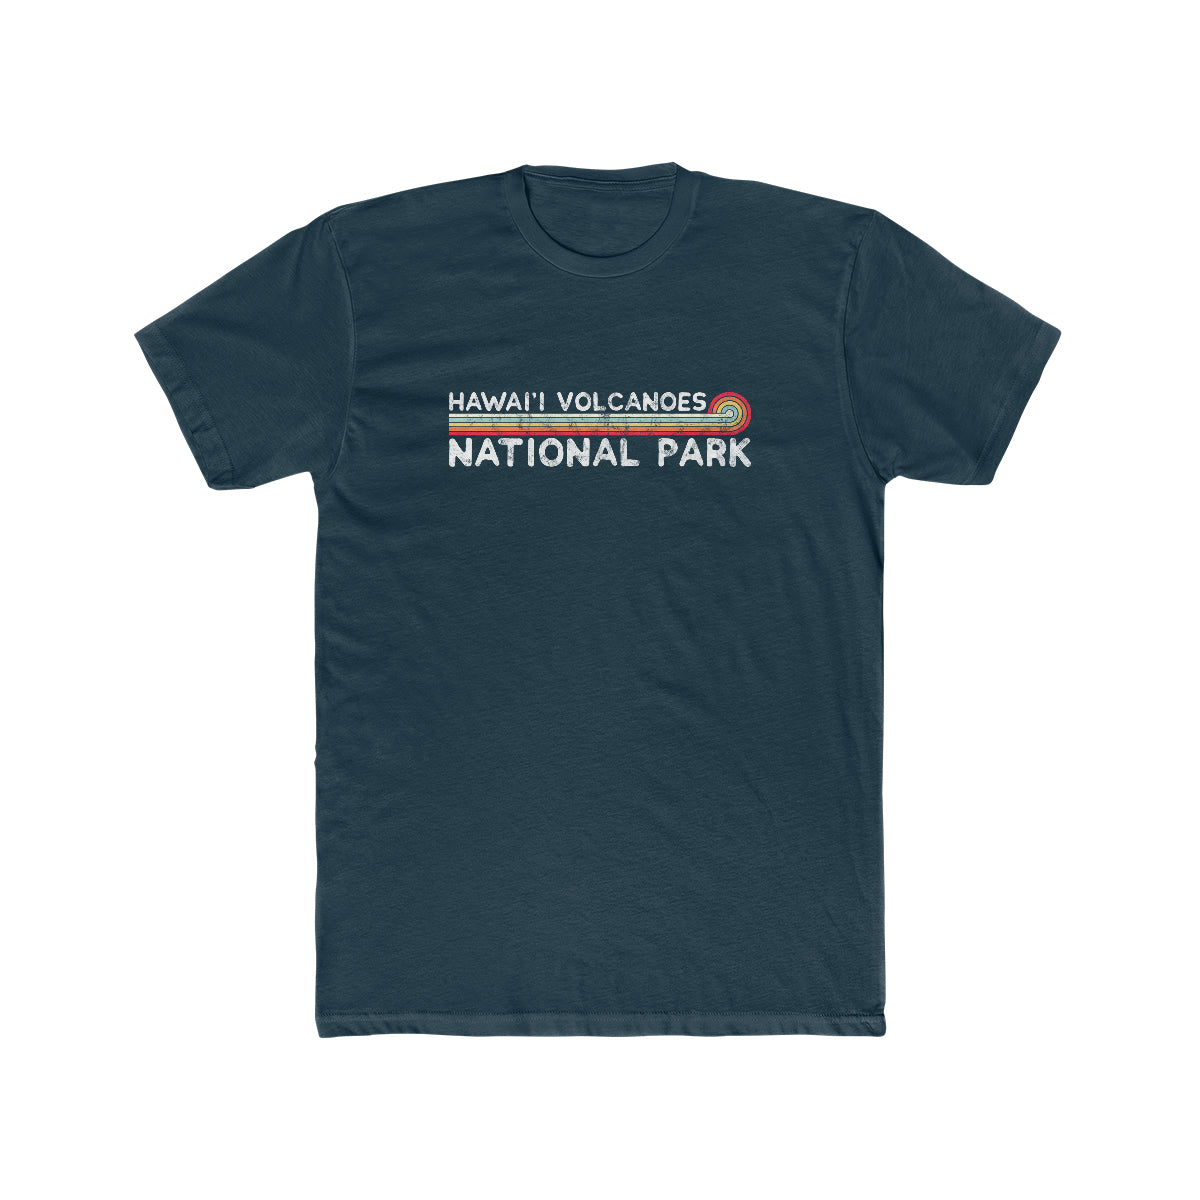 Hawaii Volcanoes National Park T-Shirt - Vintage Stretched Sunrise